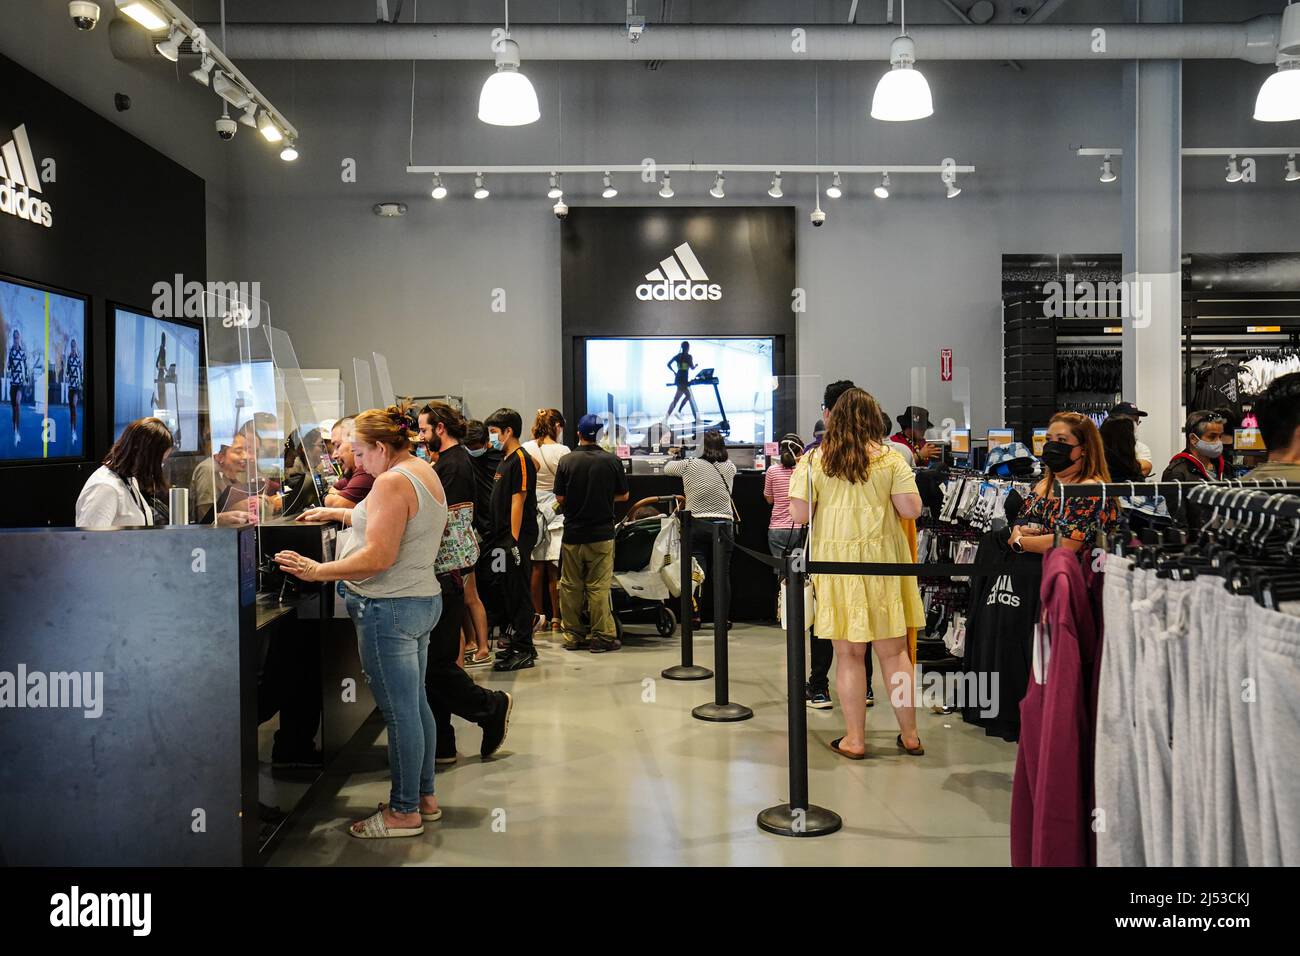 Les gens ont vu faire du shopping dans un magasin Adidas dans les magasins d 'usine d'Orange. Beaucoup de gens magasinent dans les magasins d'Orange, pour  des vêtements, des chaussures, des montres, des